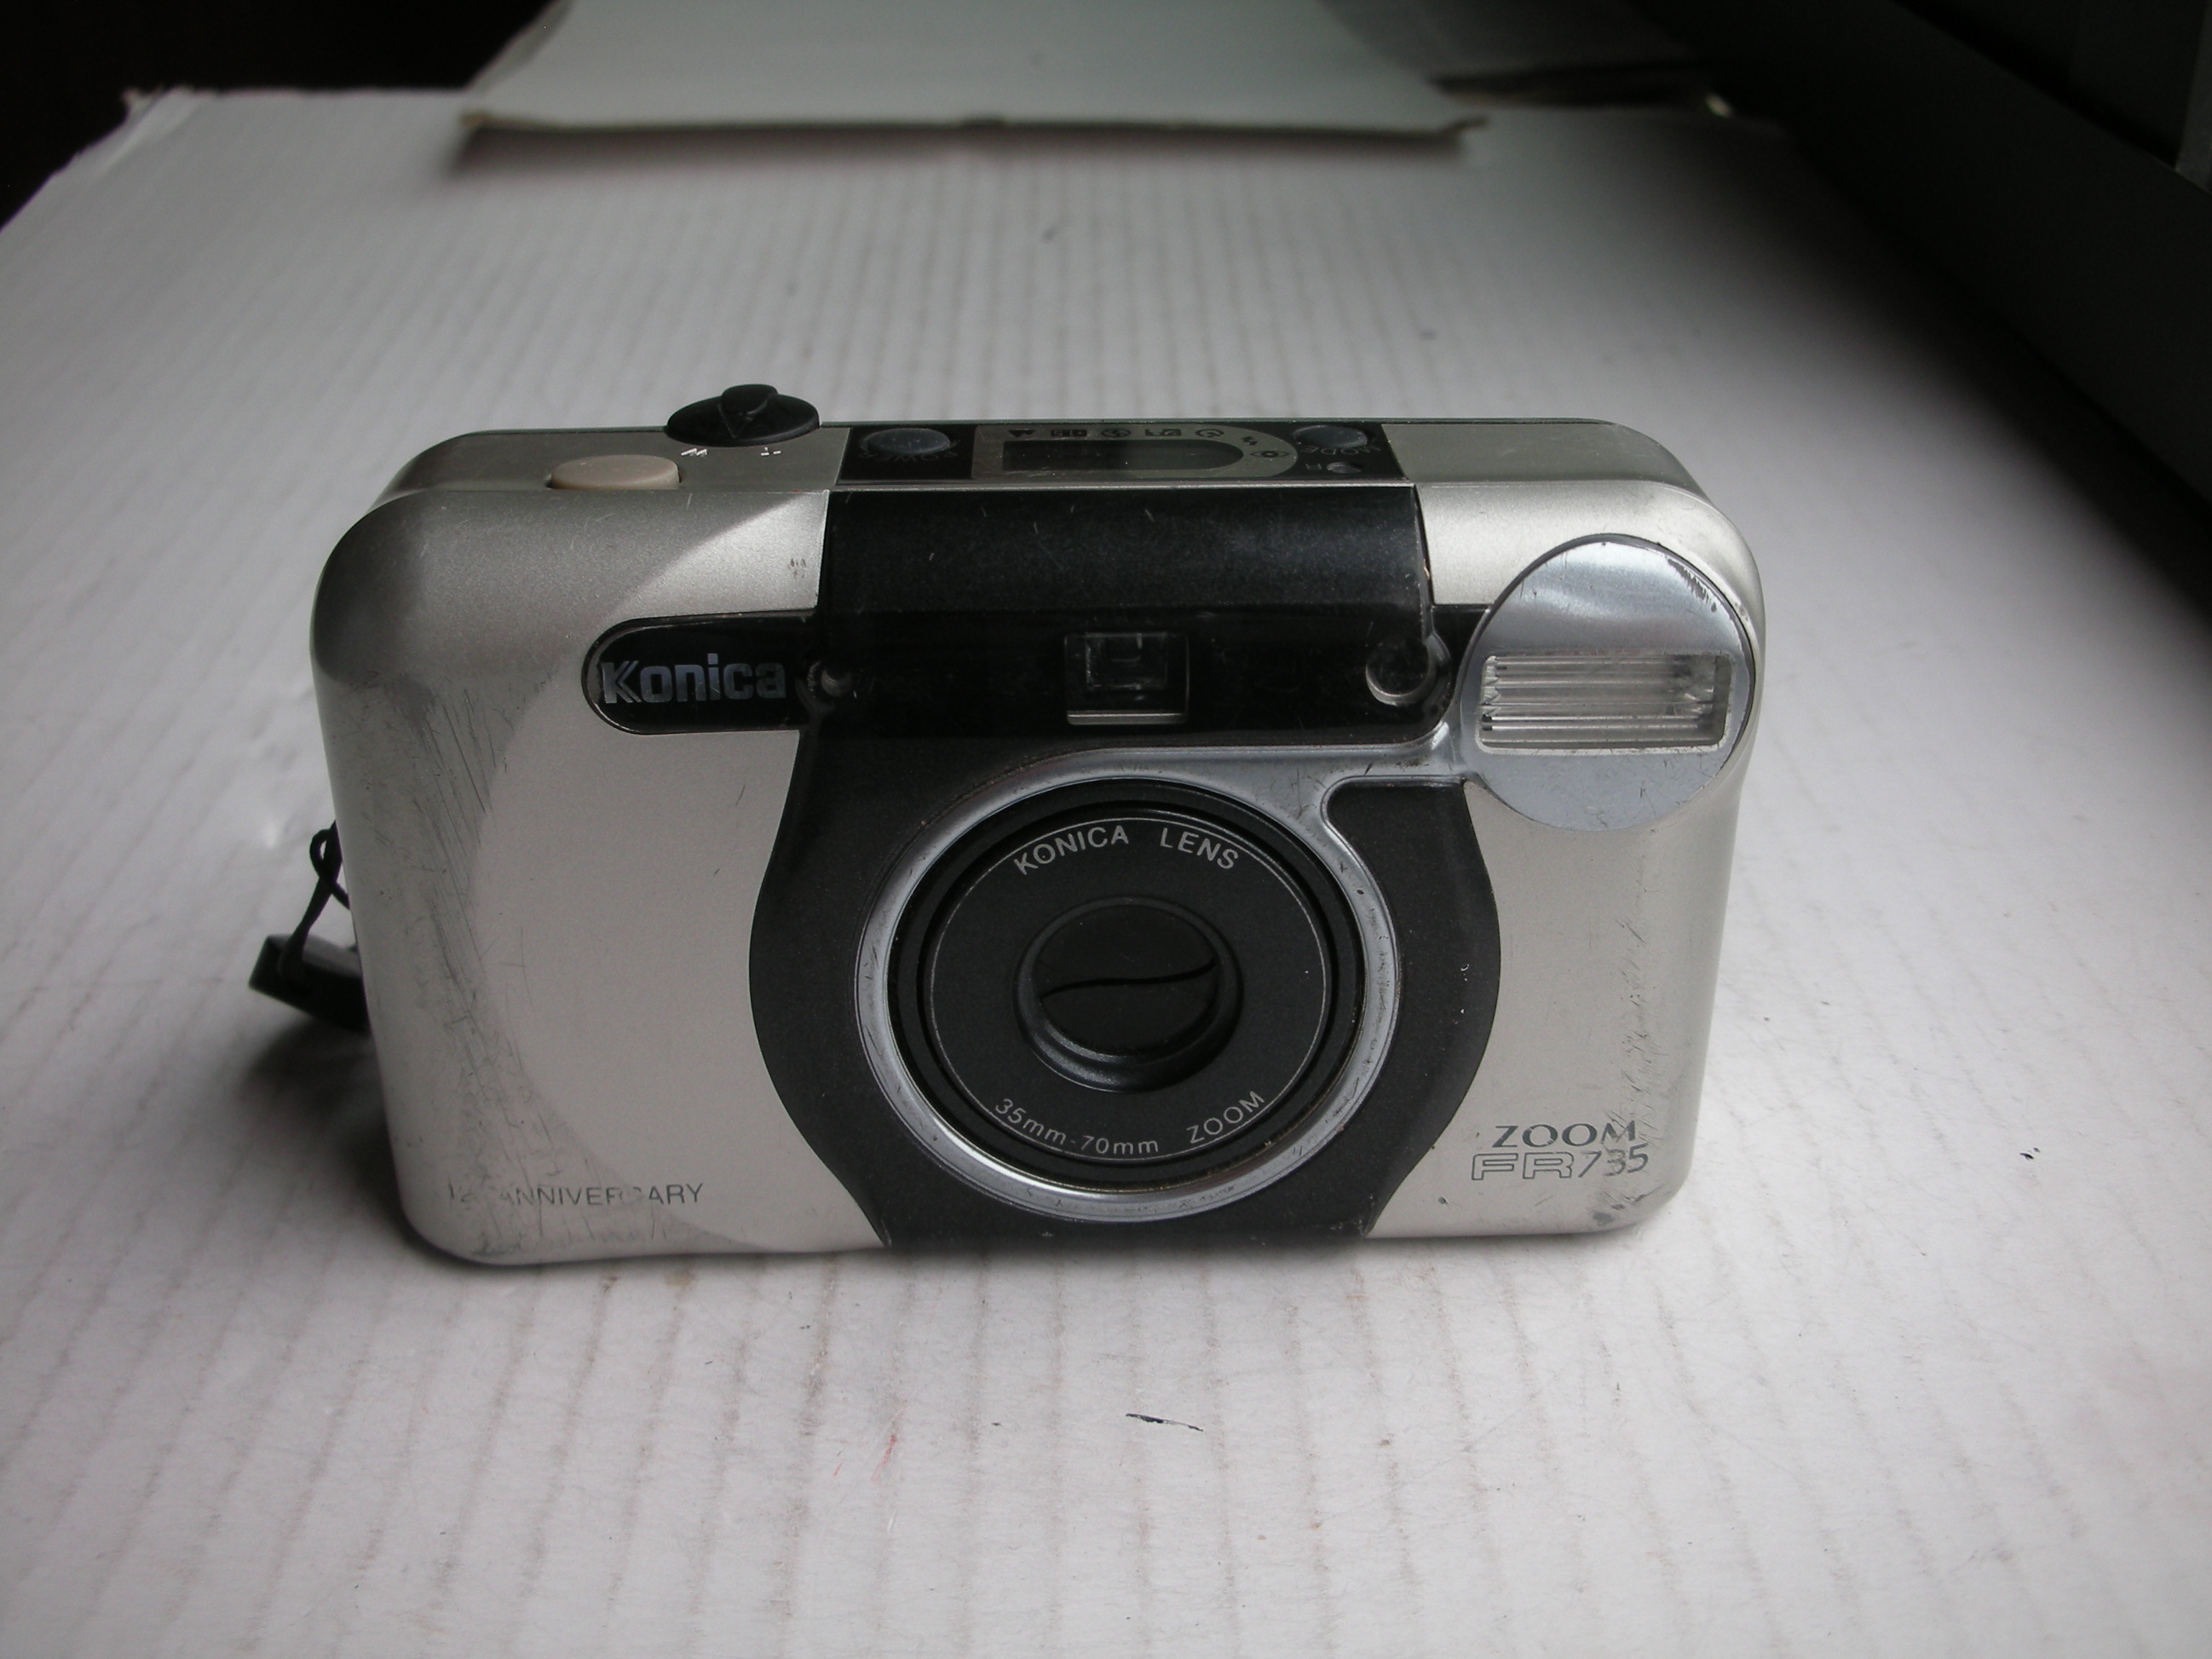 较新柯尼卡735便携式自动对焦相机，收藏使用均可